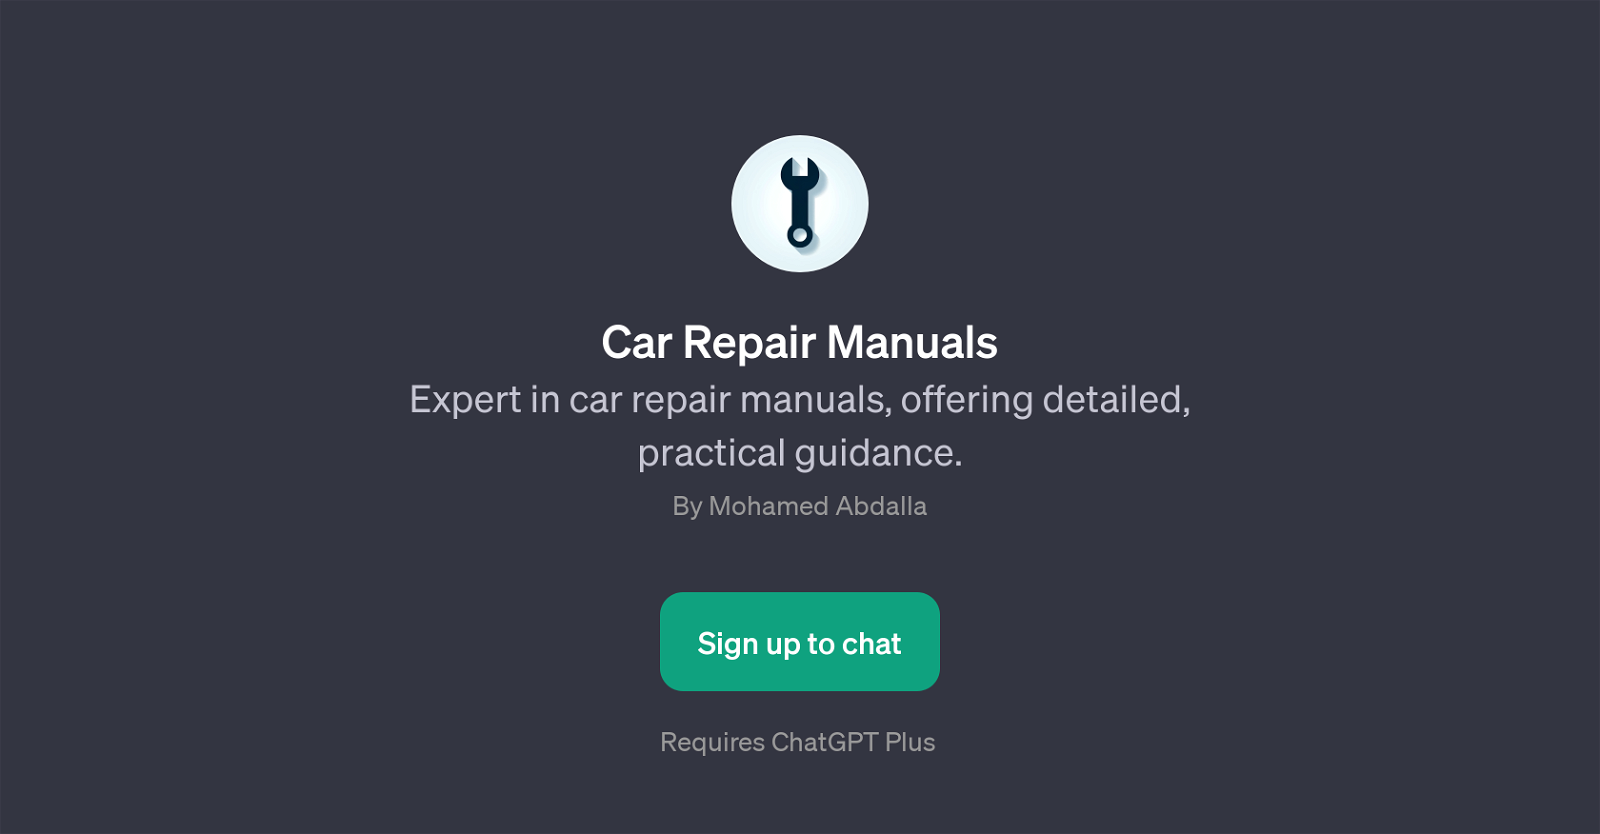 Car Repair Manuals website